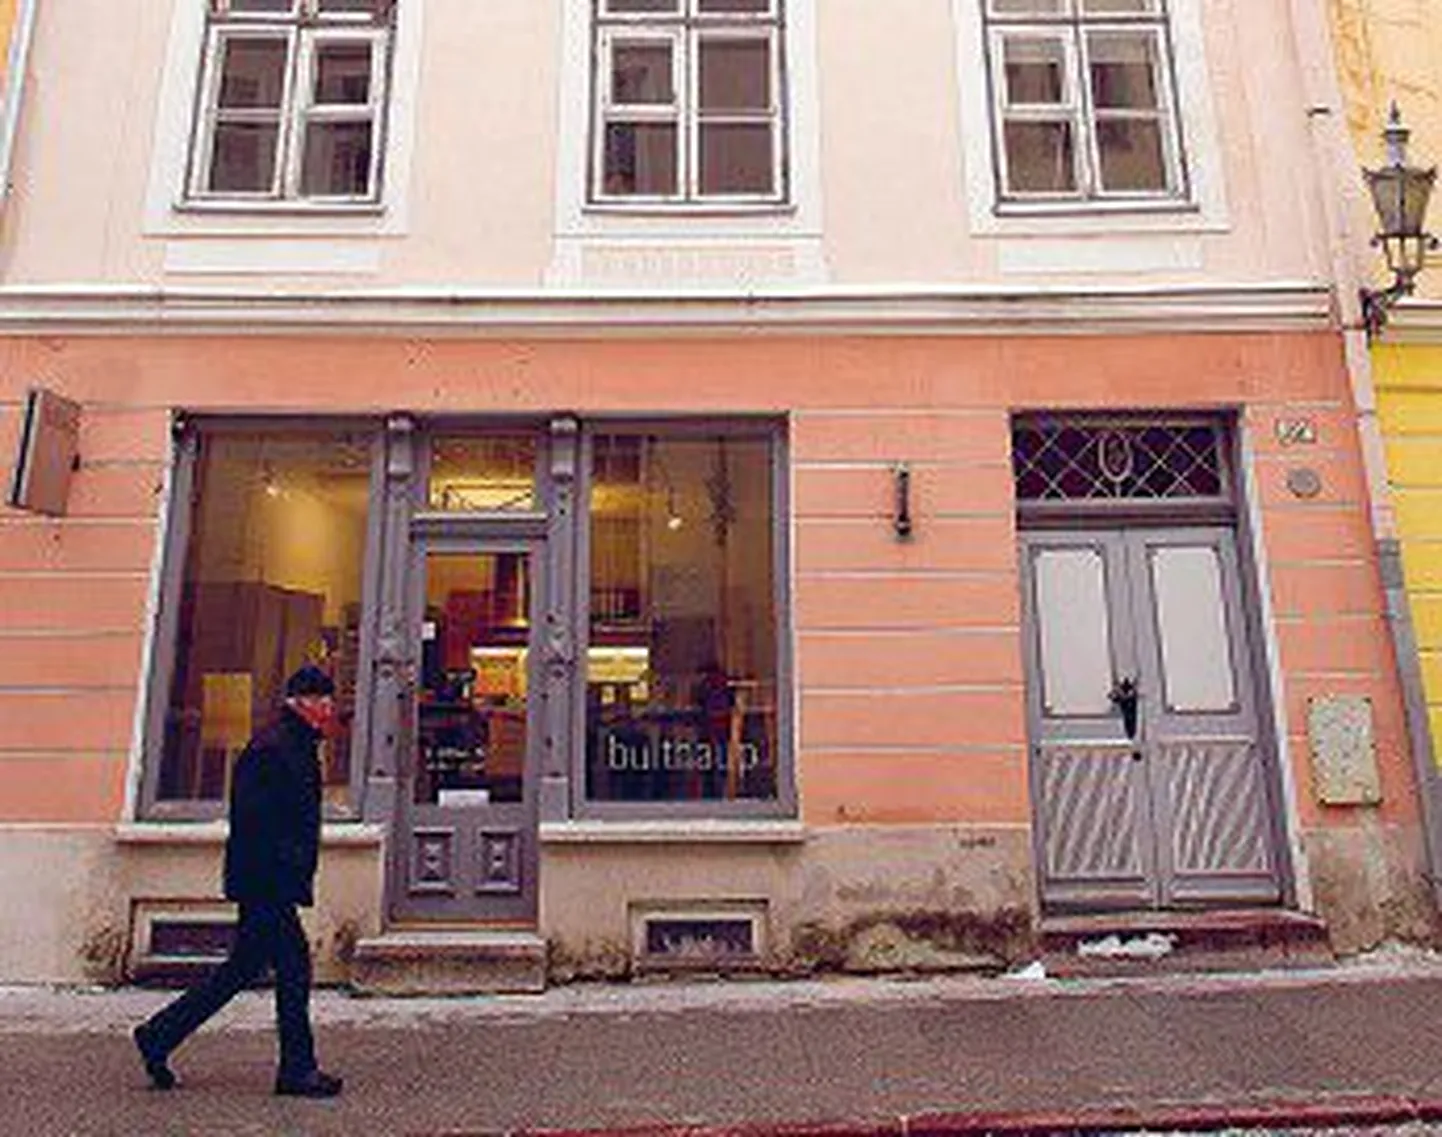 Здание на улице Пикк, 29а в Старом городе Таллинна передается Русскому музею в пользование бесплатно.